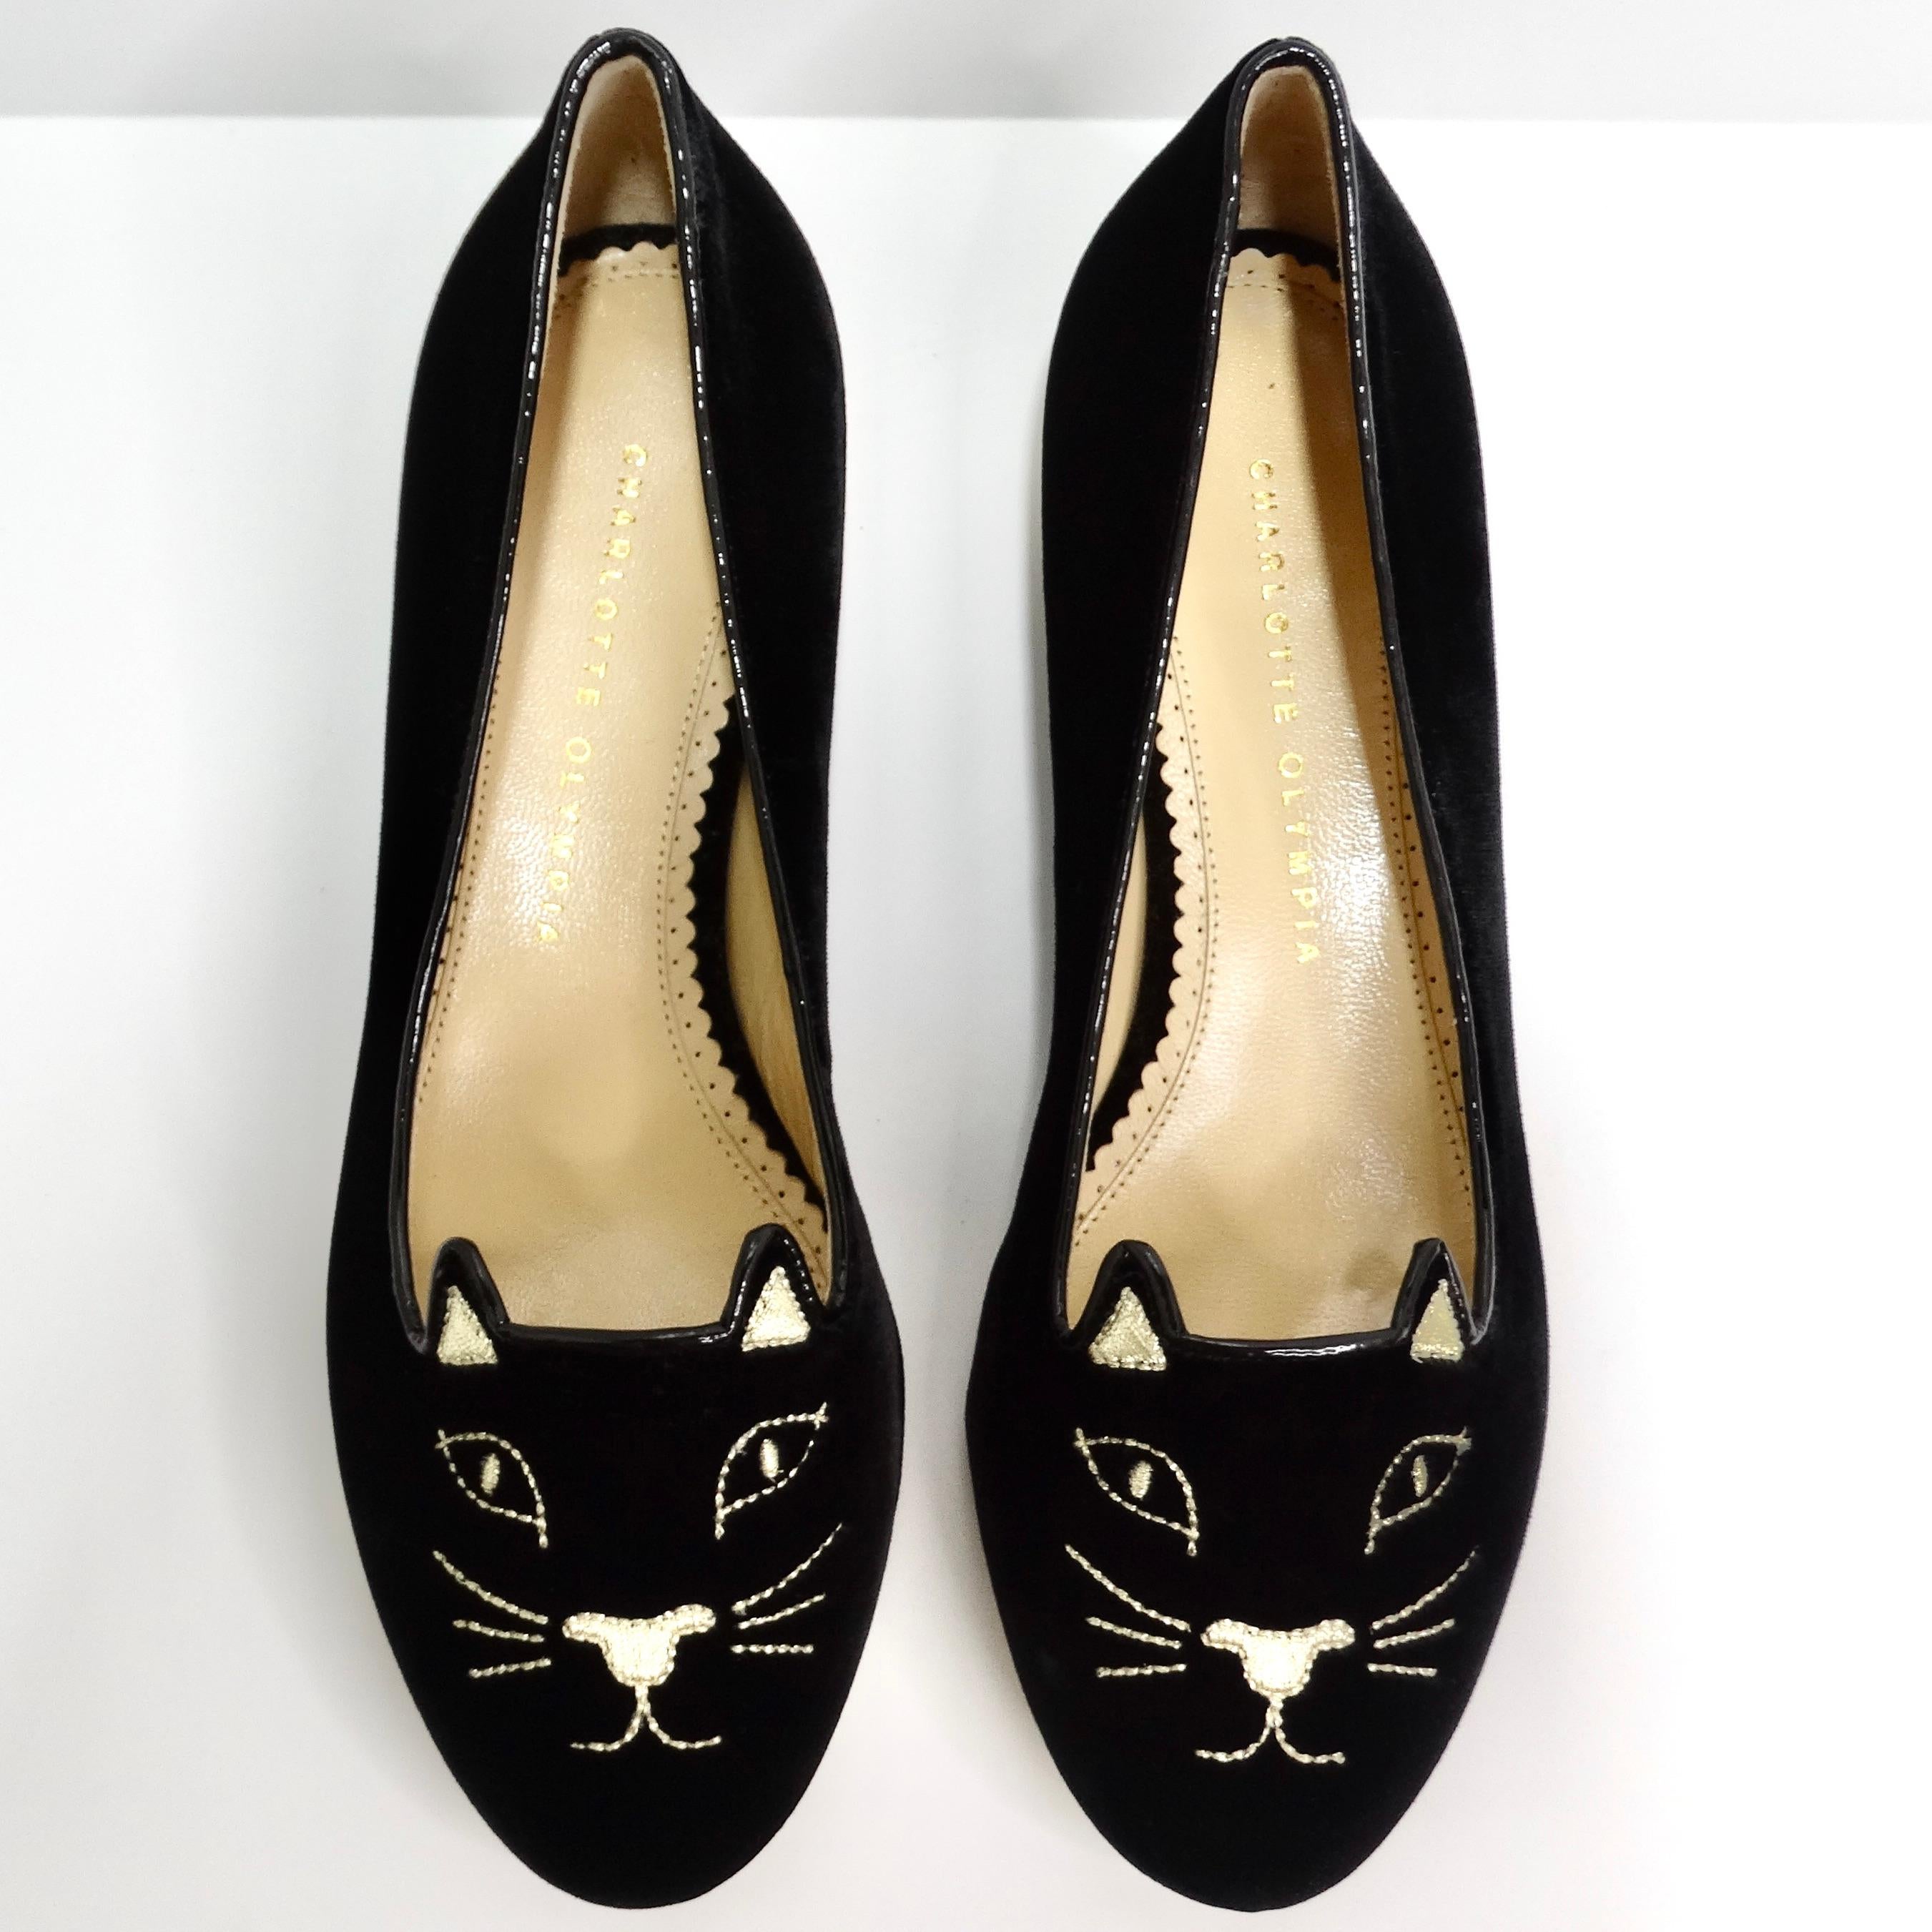 Die Charlotte Olympia Designer Signed Kitty Embroidered Flats sind das ultimative verspielte Accessoire für Katzenliebhaber. Diese schwarzen Samtflats sind mit einer entzückenden, goldfarbenen Katzenstickerei an der Schuhspitze versehen, die einen